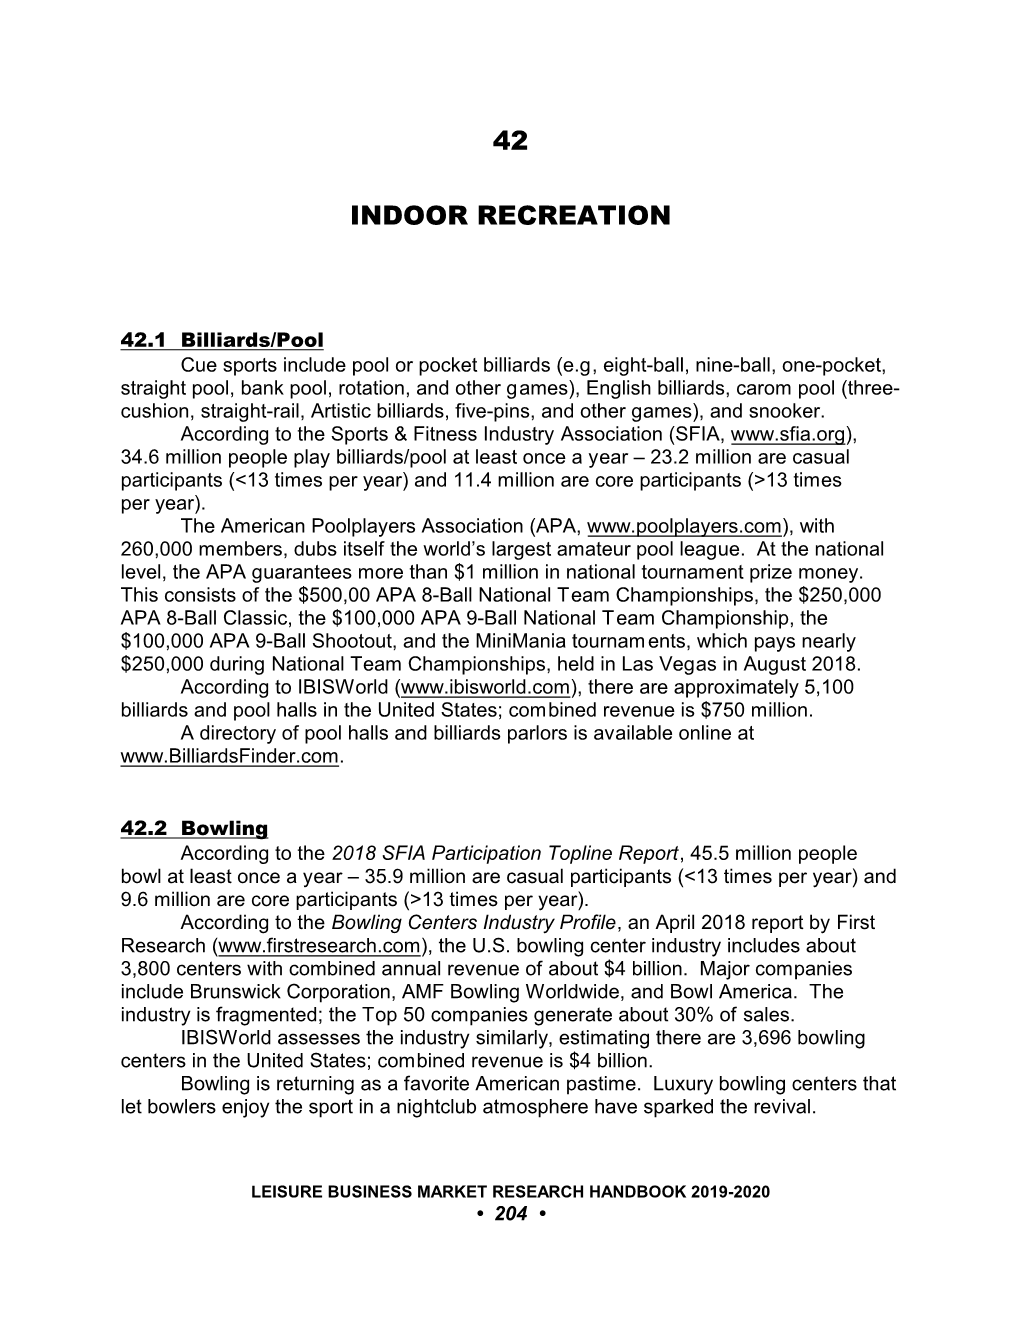 42 Indoor Recreation